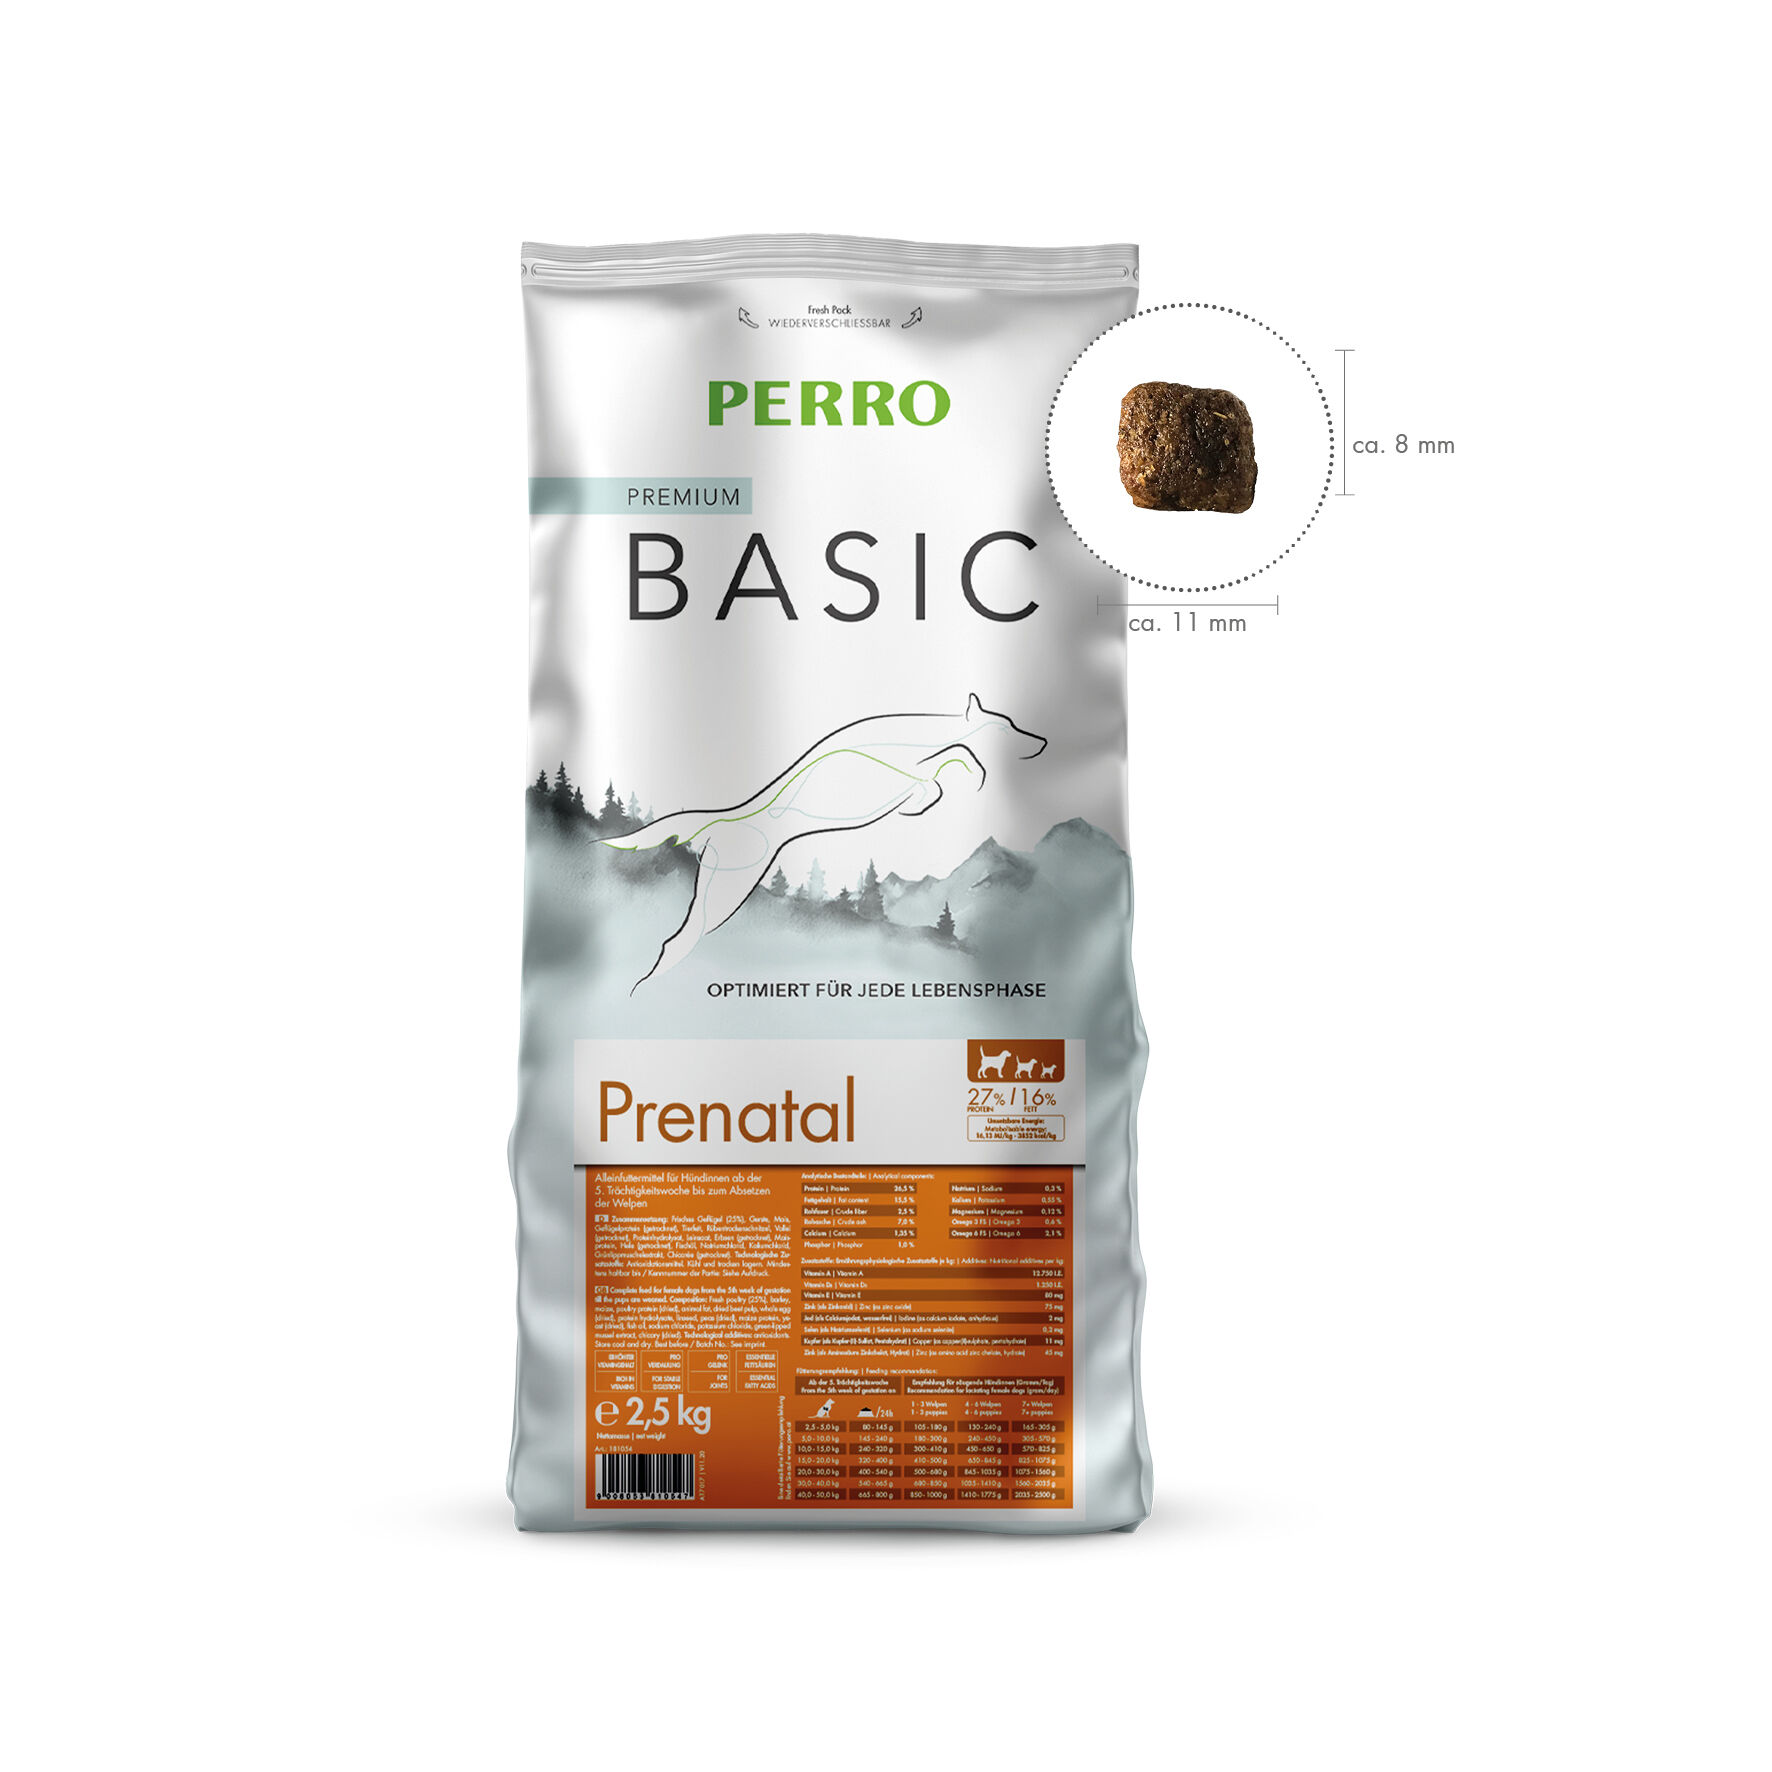 PERRO-Basic-Prenatal-Trockenfutter-fuer-saeugende-Huendin-181054